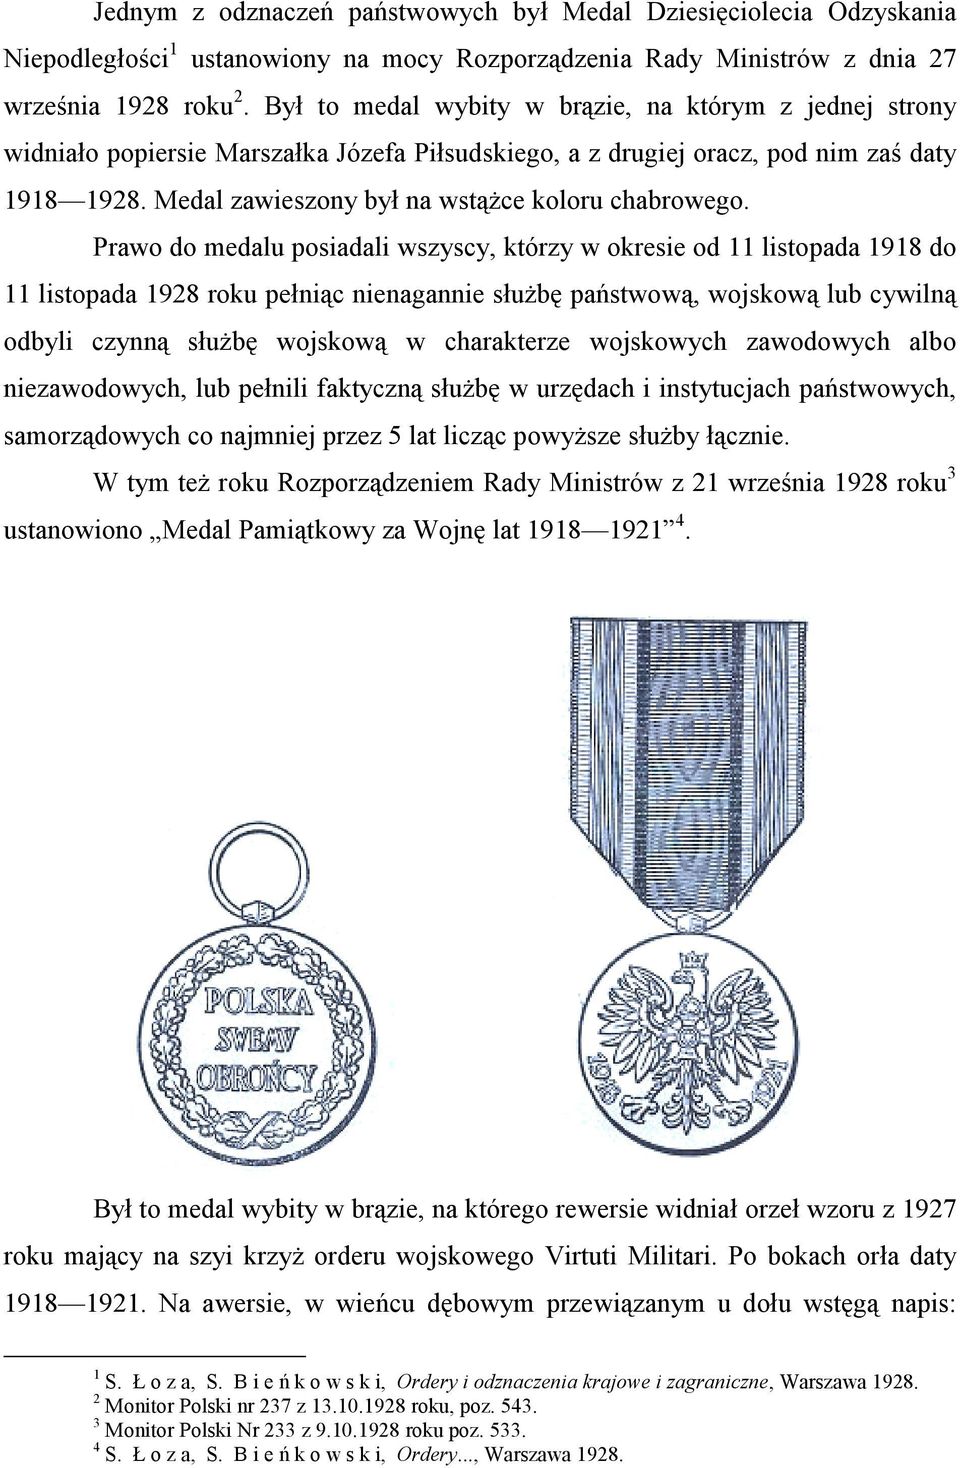 Medal zawieszony był na wstążce koloru chabrowego.